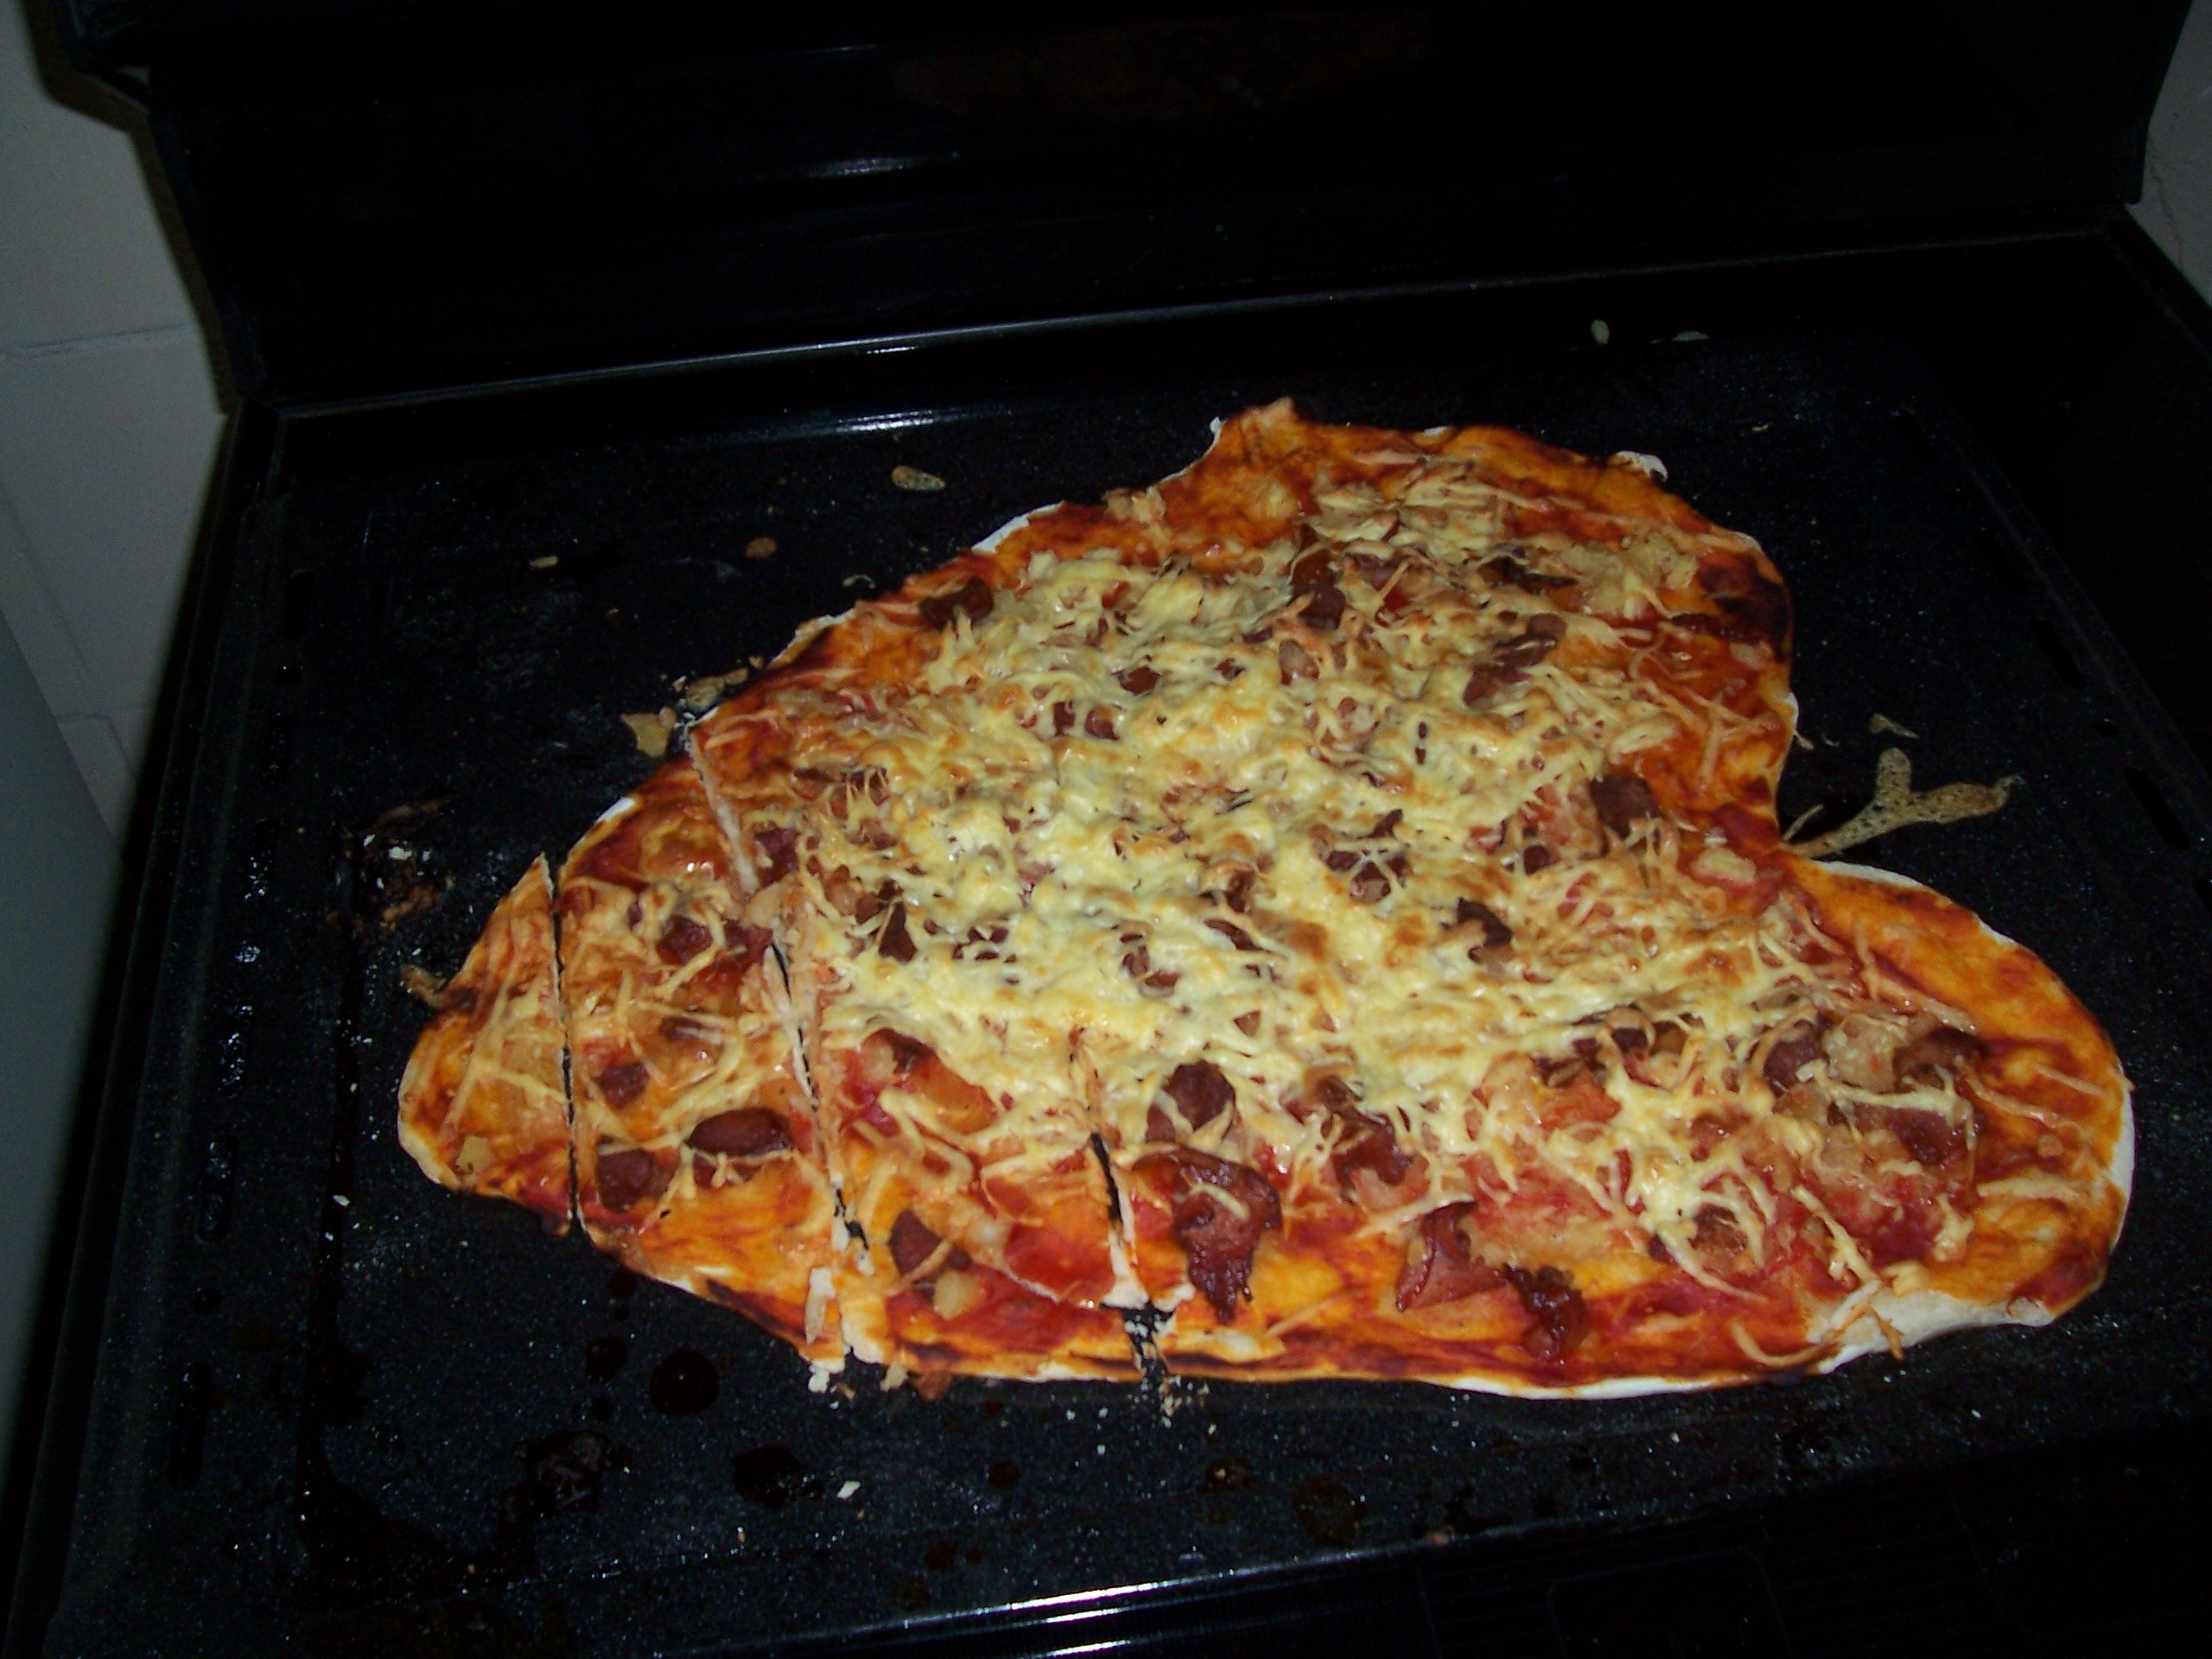 Рецепт закрытой пиццы в домашних условиях в духовке с фото